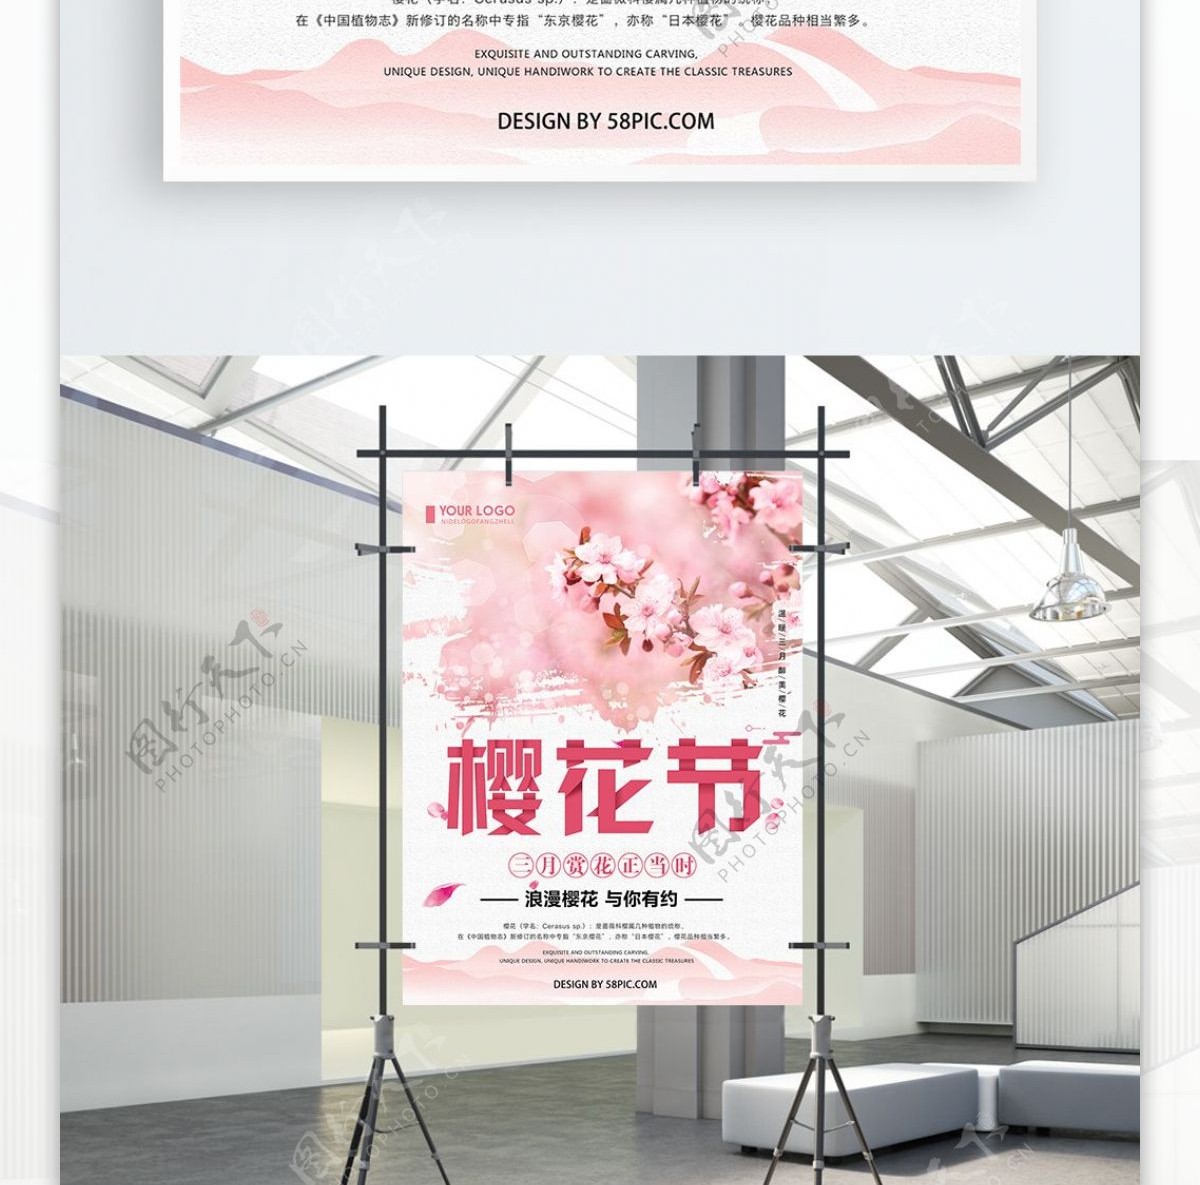 粉色清新简约樱花节宣传海报